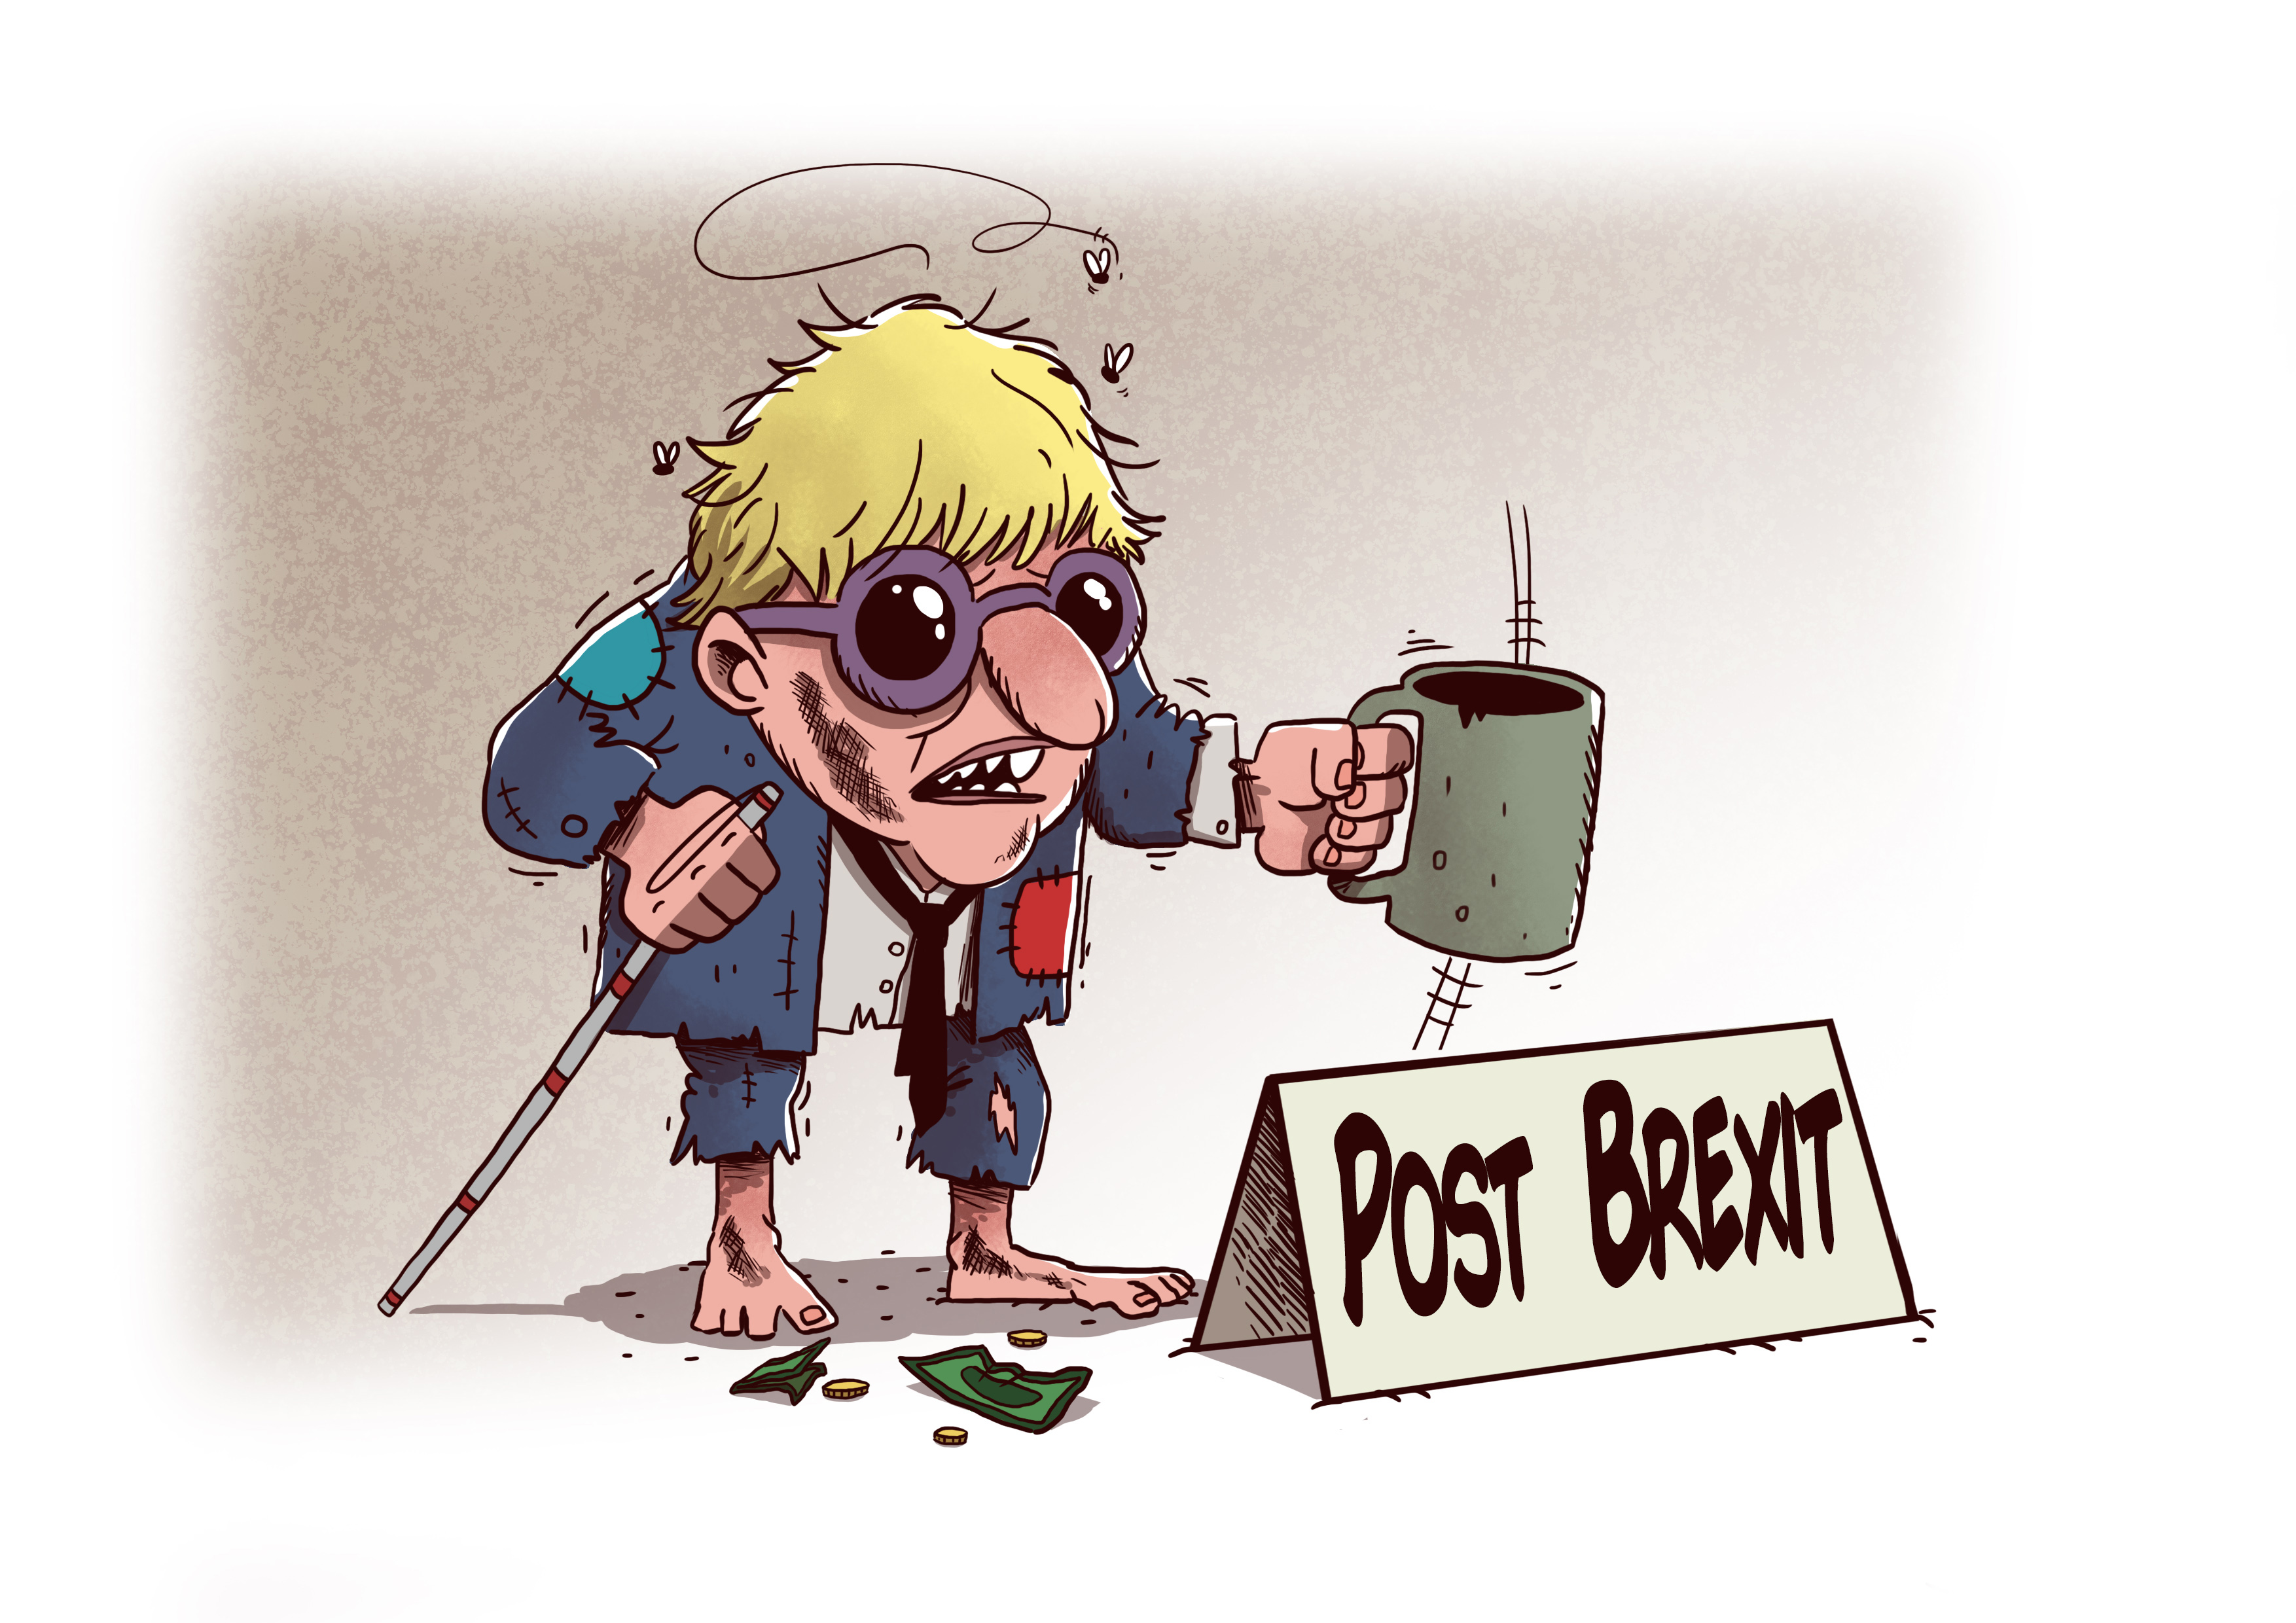 Post Brext